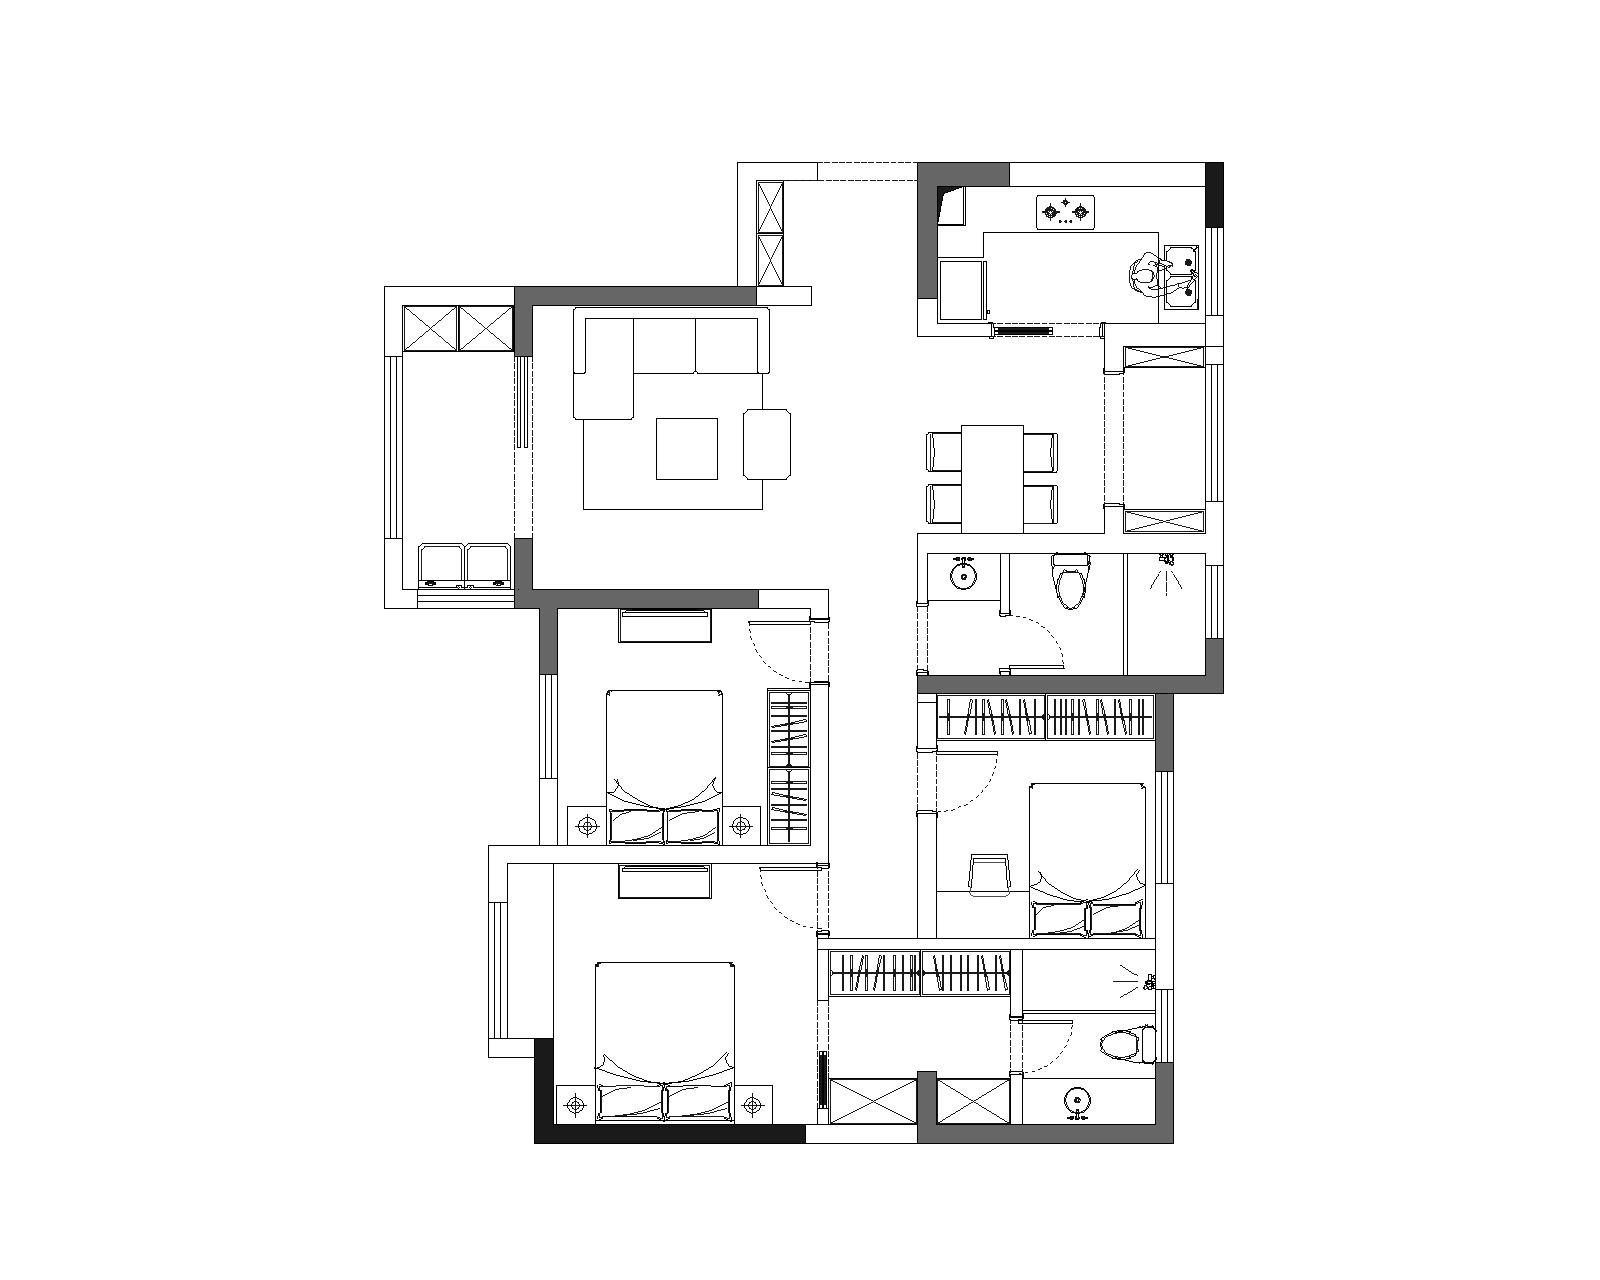 现代简约三居室120平米24万-蝴蝶湾装修案例-苏州房天下家居装修网